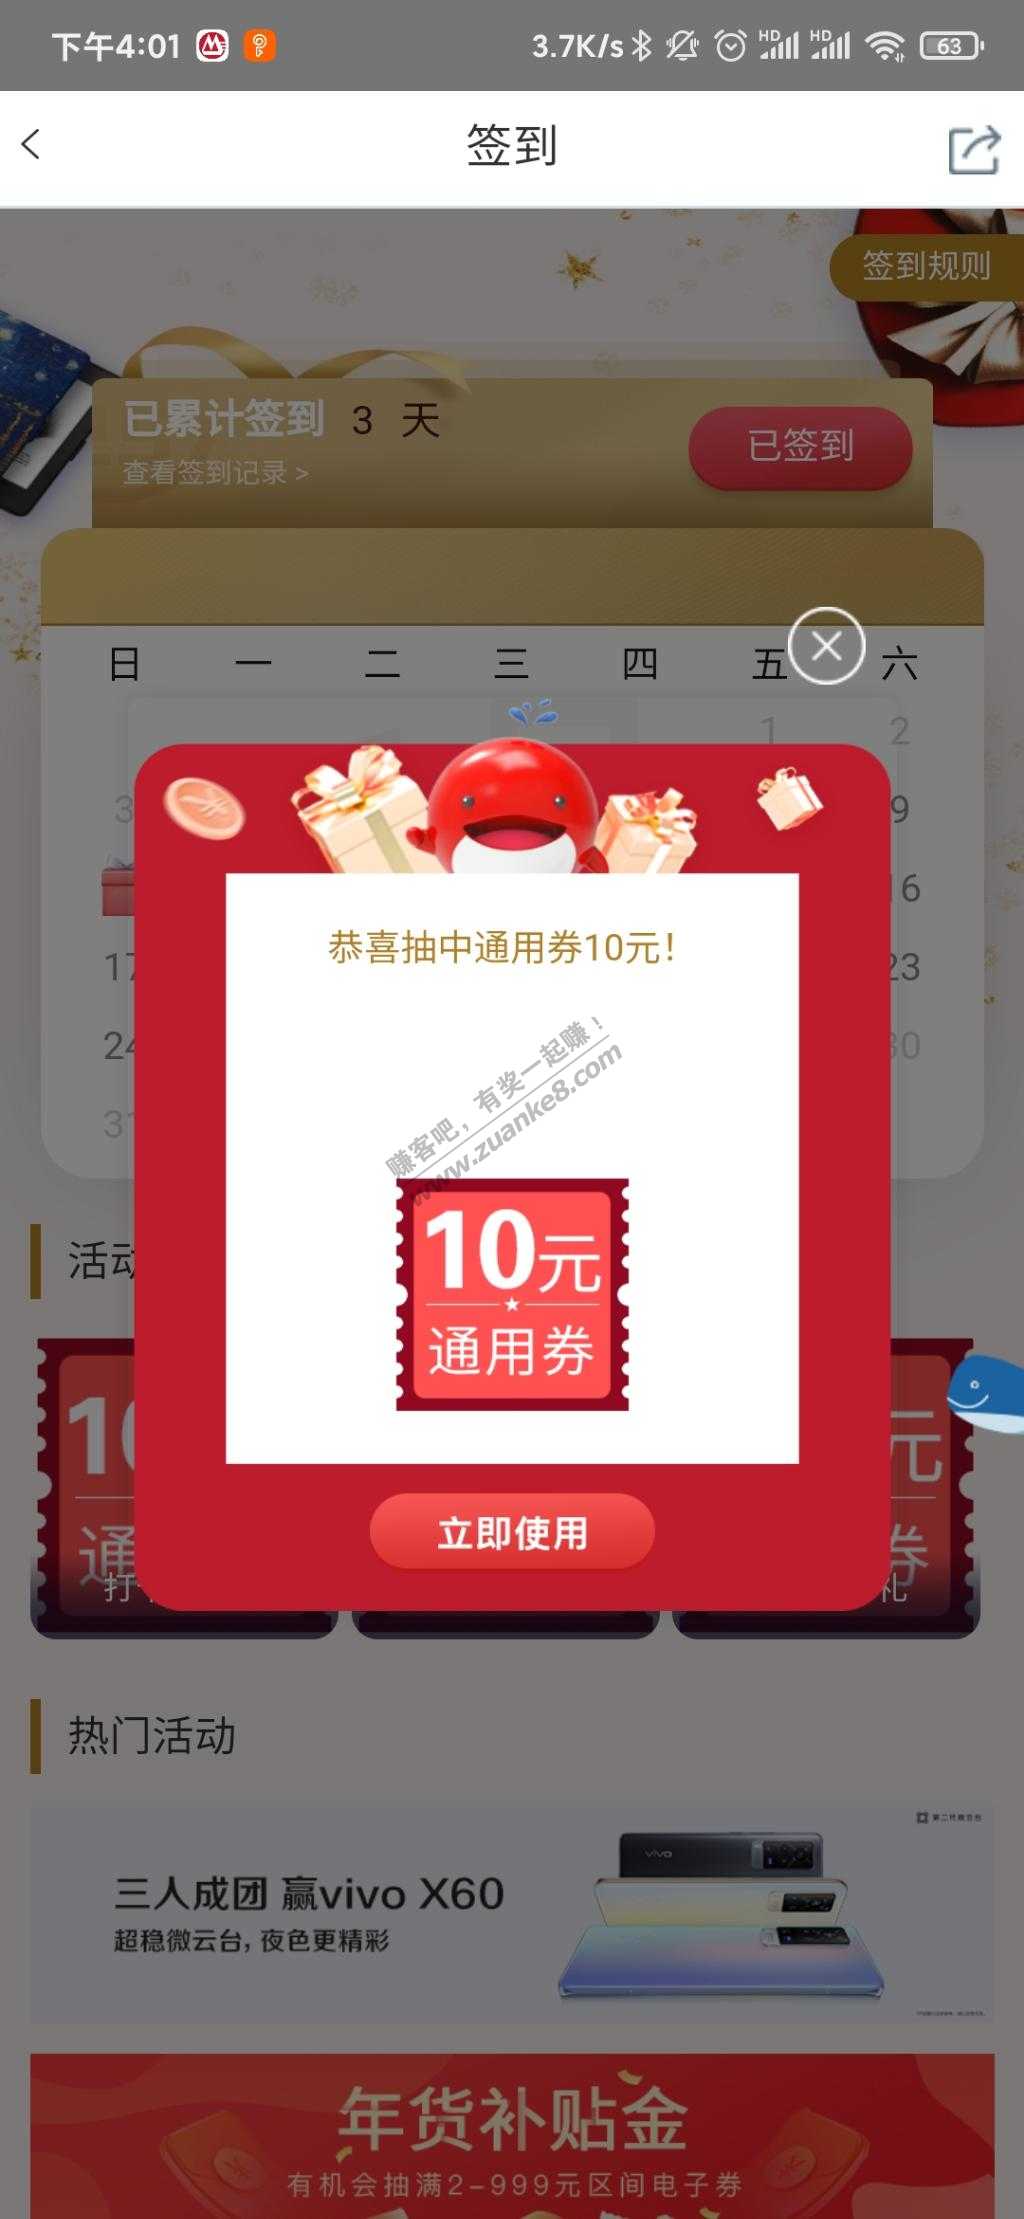 融e购-签到10元-惠小助(52huixz.com)